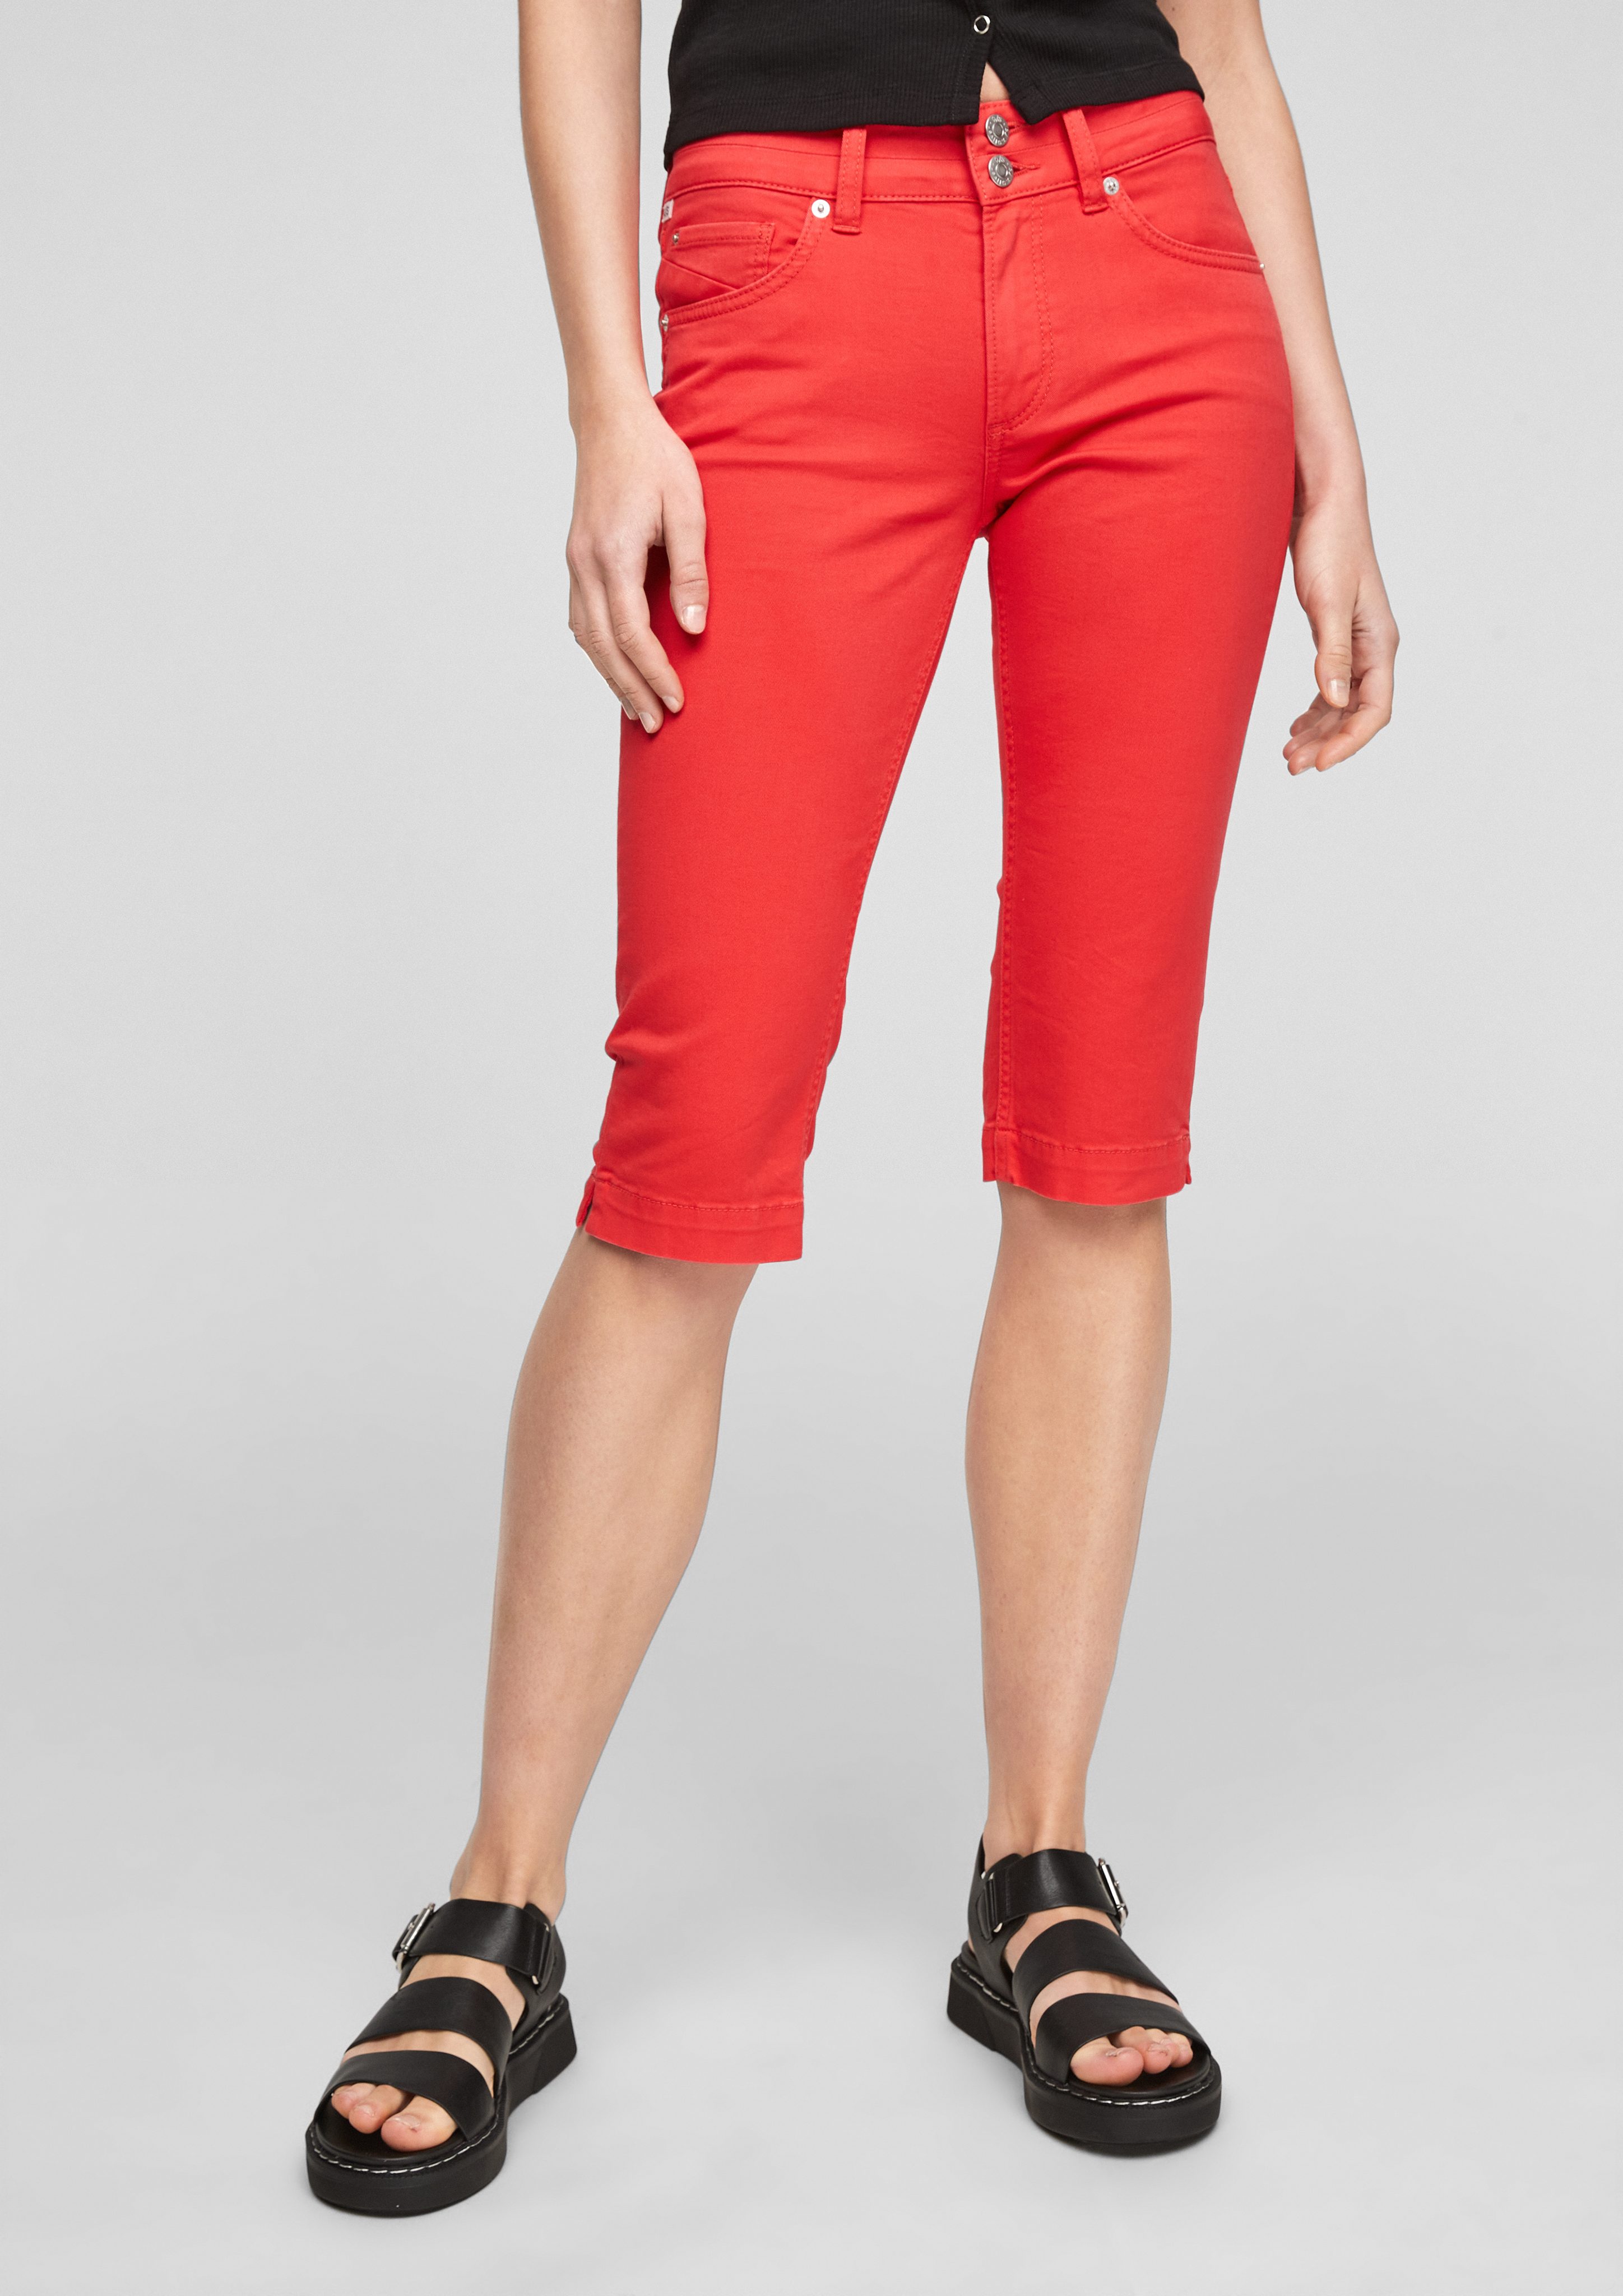 Label-Patch QS Slim Capri-Jeans 3/4-Hose Coloured Fit: